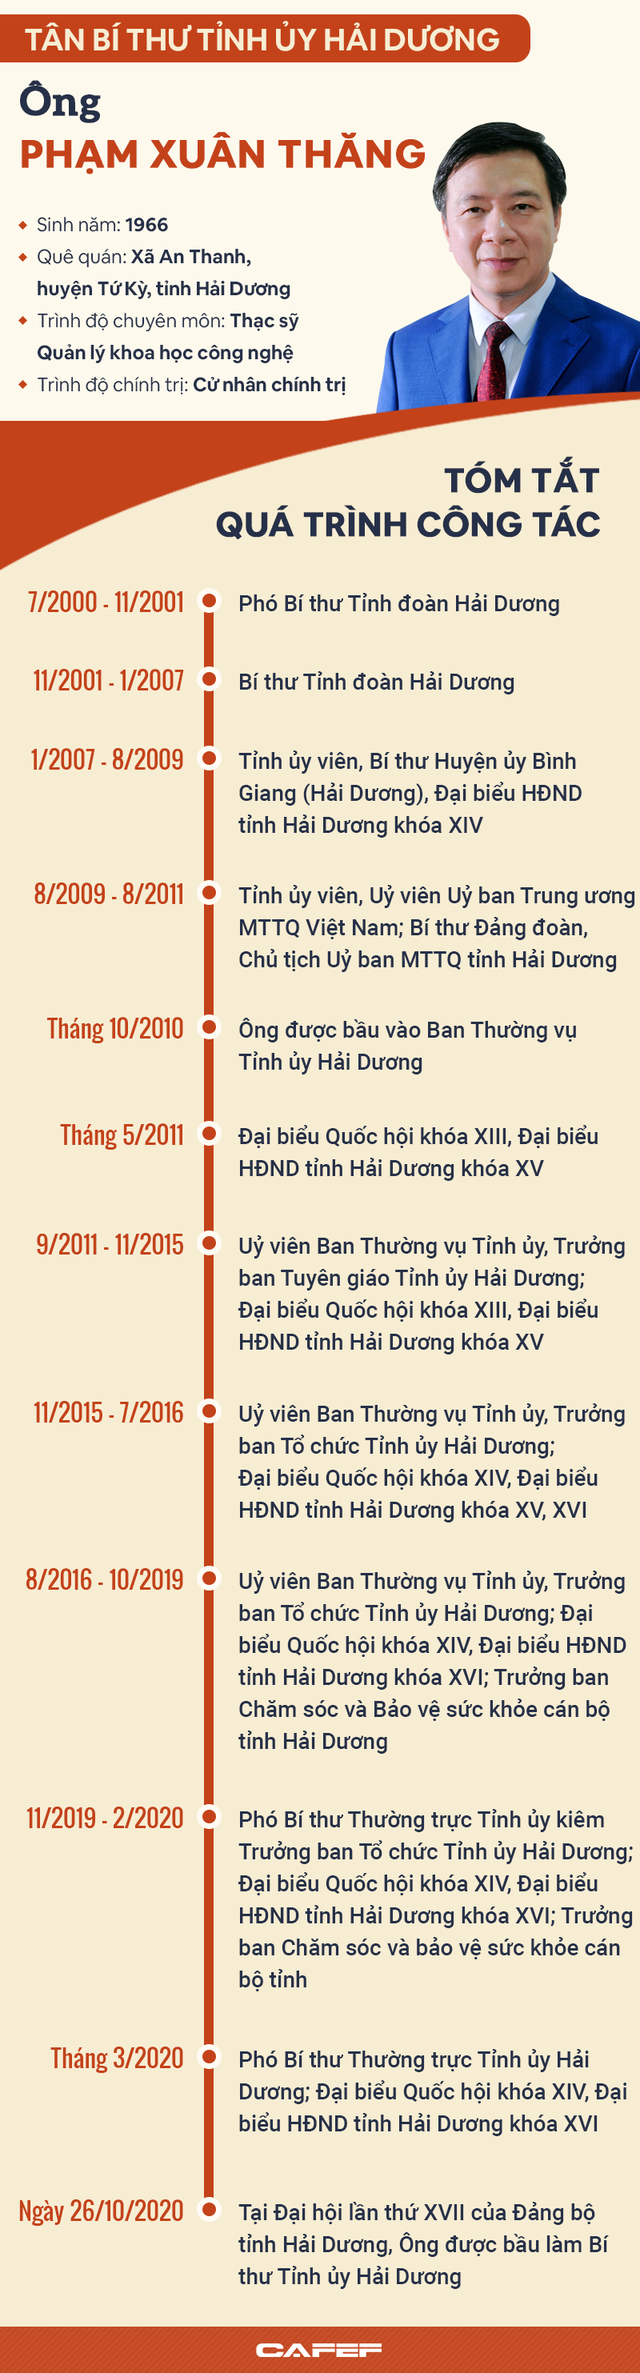 Infographic: Chân dung tân Bí thư Tỉnh ủy Hải Dương Phạm Xuân Thăng - Ảnh 1.